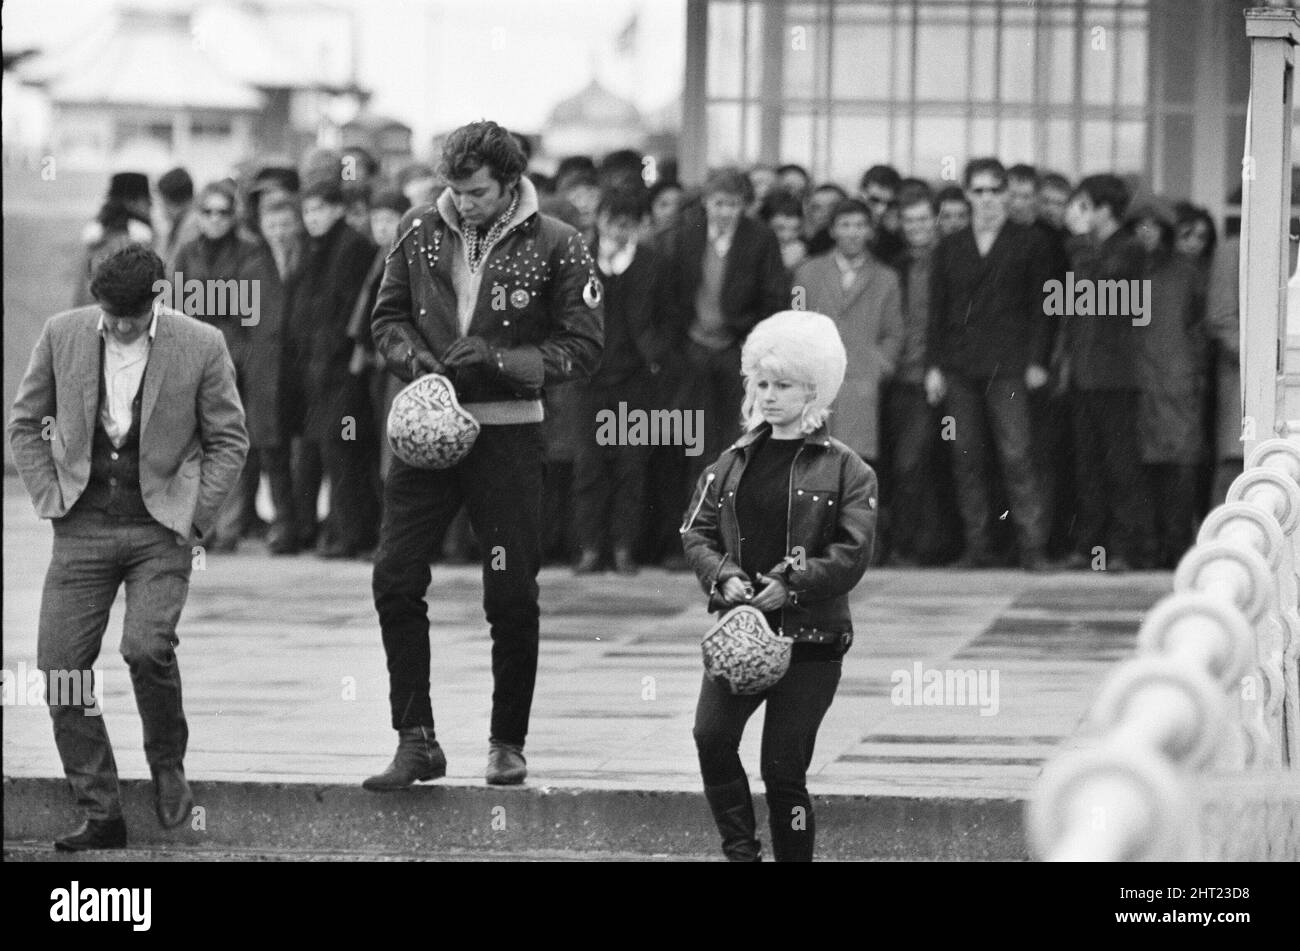 Die Mods und Rockers waren zwei widersprüchliche britische Jugendsubkulturen von Anfang bis Mitte 1960s. Die Berichterstattung über die Kämpfe von Mods und Rockern im Jahr 1964 löste eine moralische Panik über britische Jugendliche aus, und die beiden Gruppen wurden als Volksteufel bezeichnet. Mods im Hintergrund, 2 Rockers im Vordergrund bei Brighton. 18.. April 1965. Stockfoto